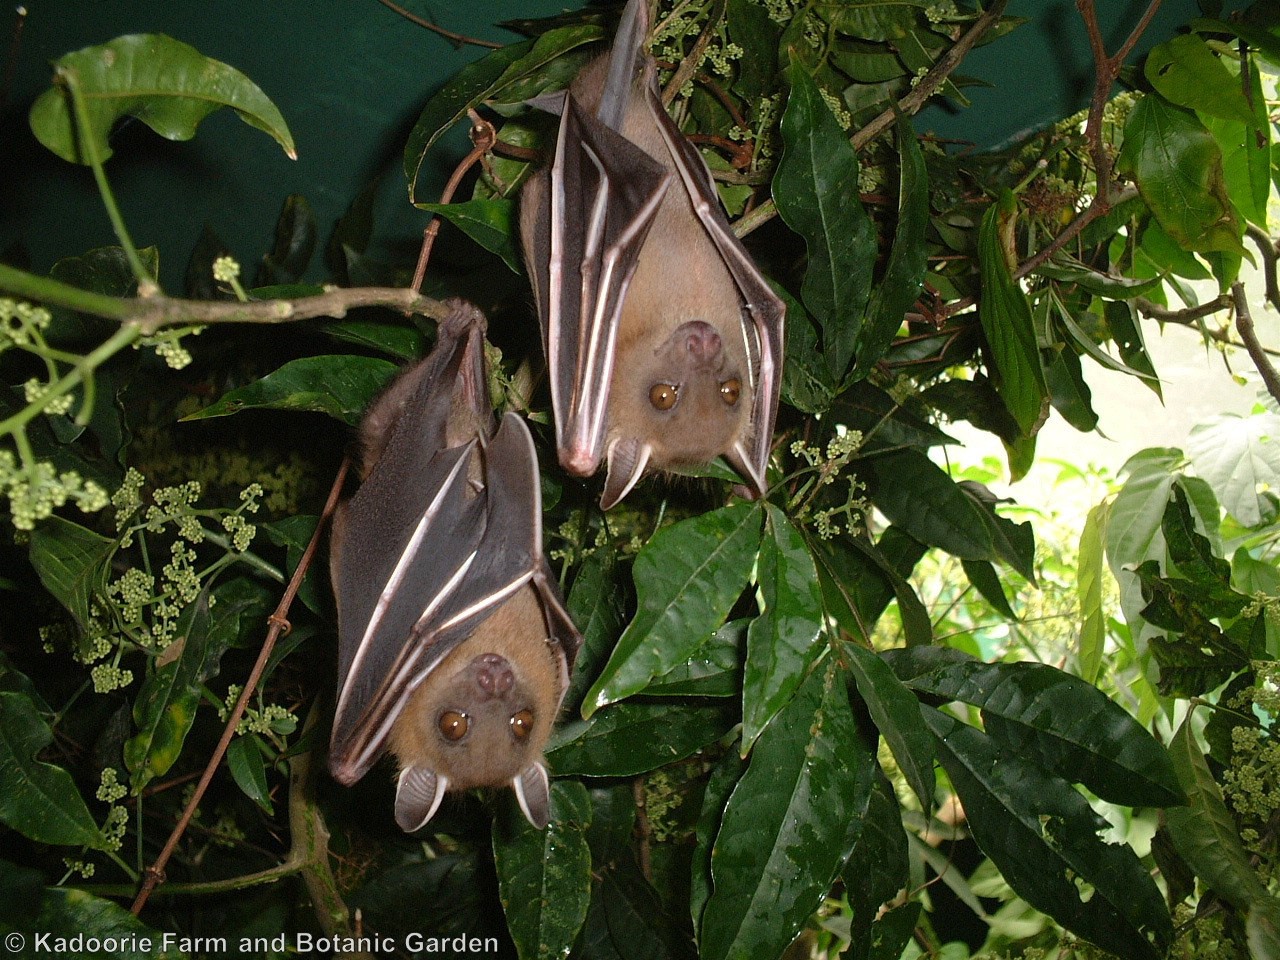 蝙蝠與地球的健康息息相關 下篇 Kfbg網誌 嘉道理農場暨植物園